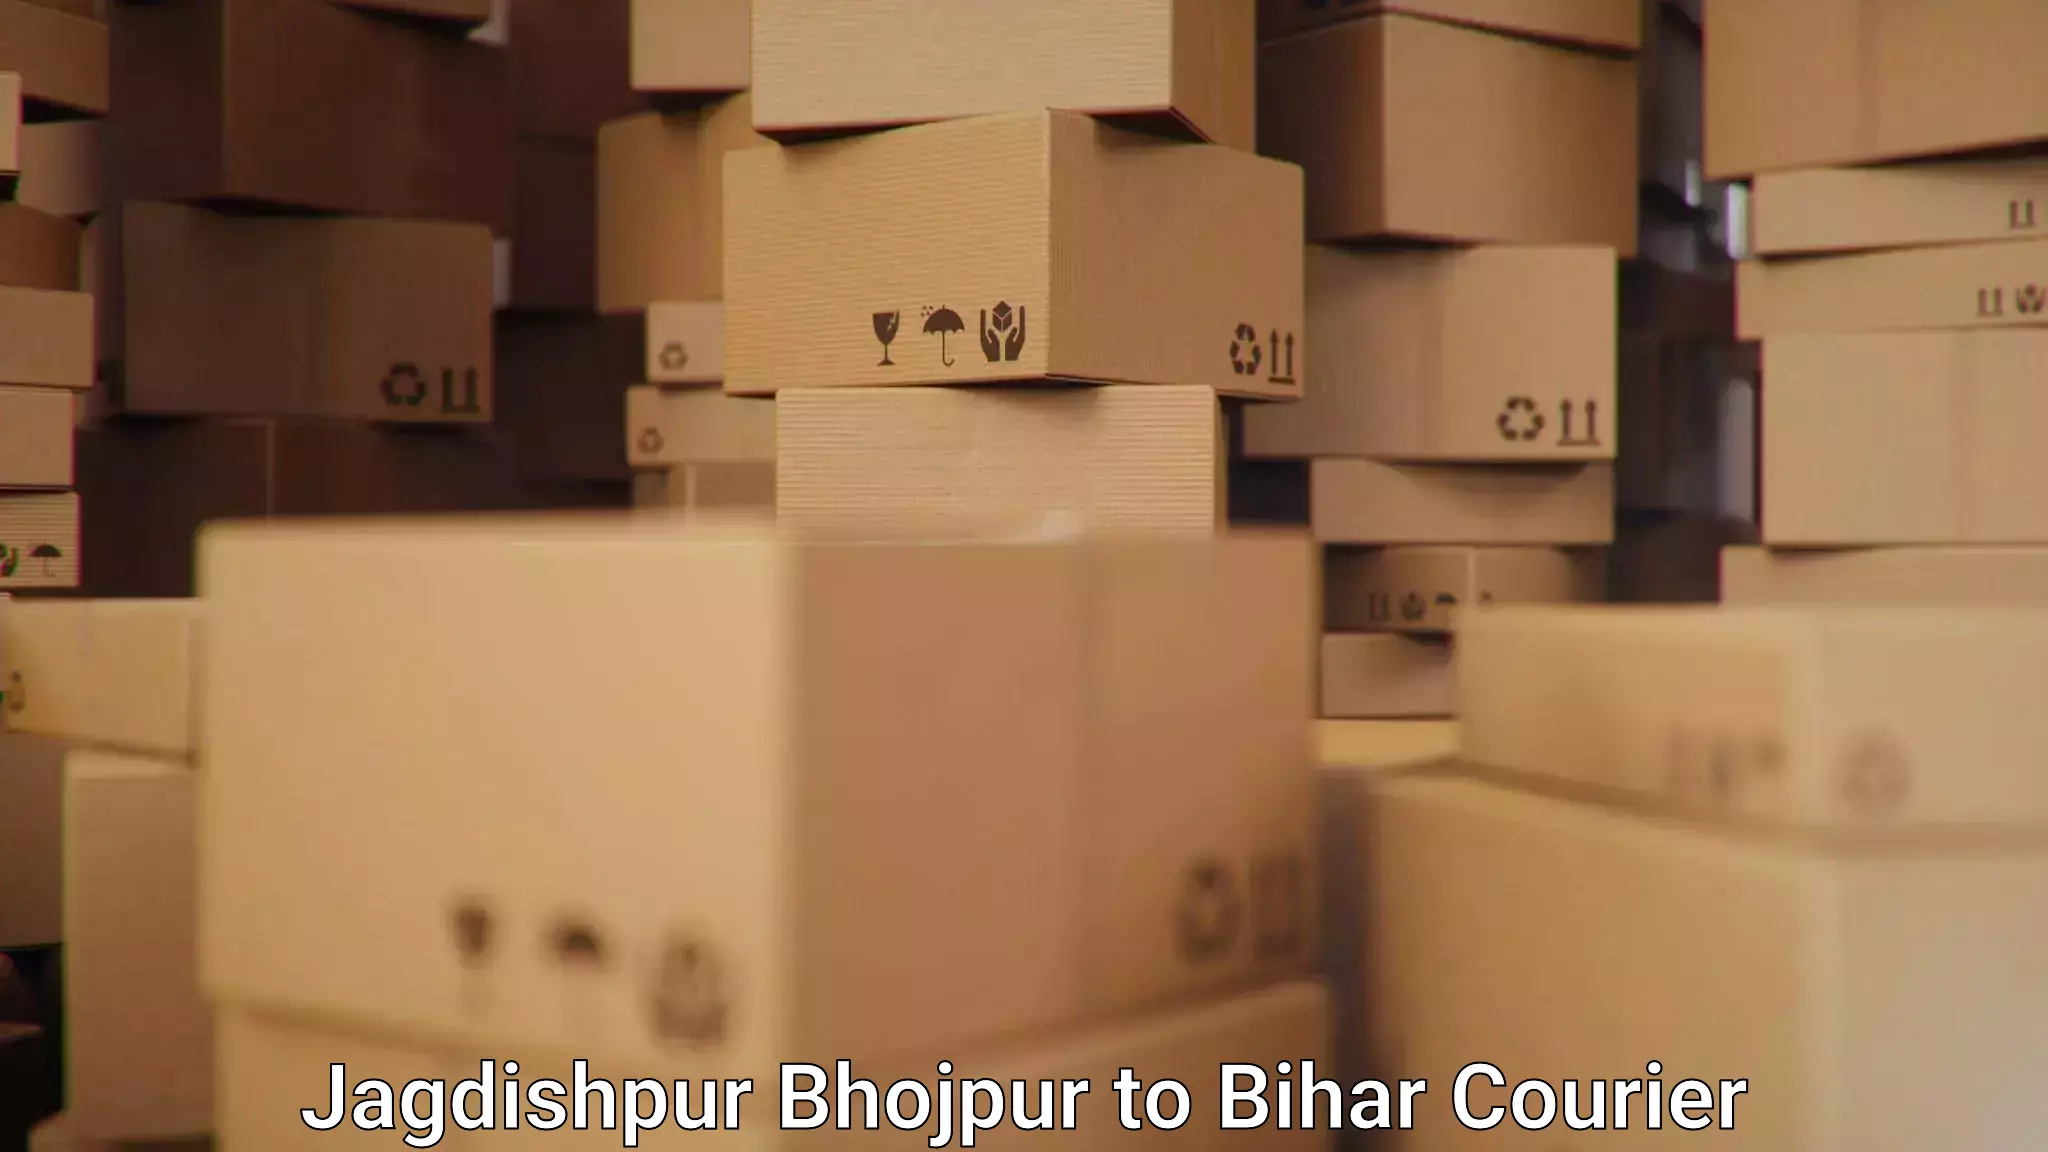 Urban courier service Jagdishpur Bhojpur to Raghunathpur Buxar